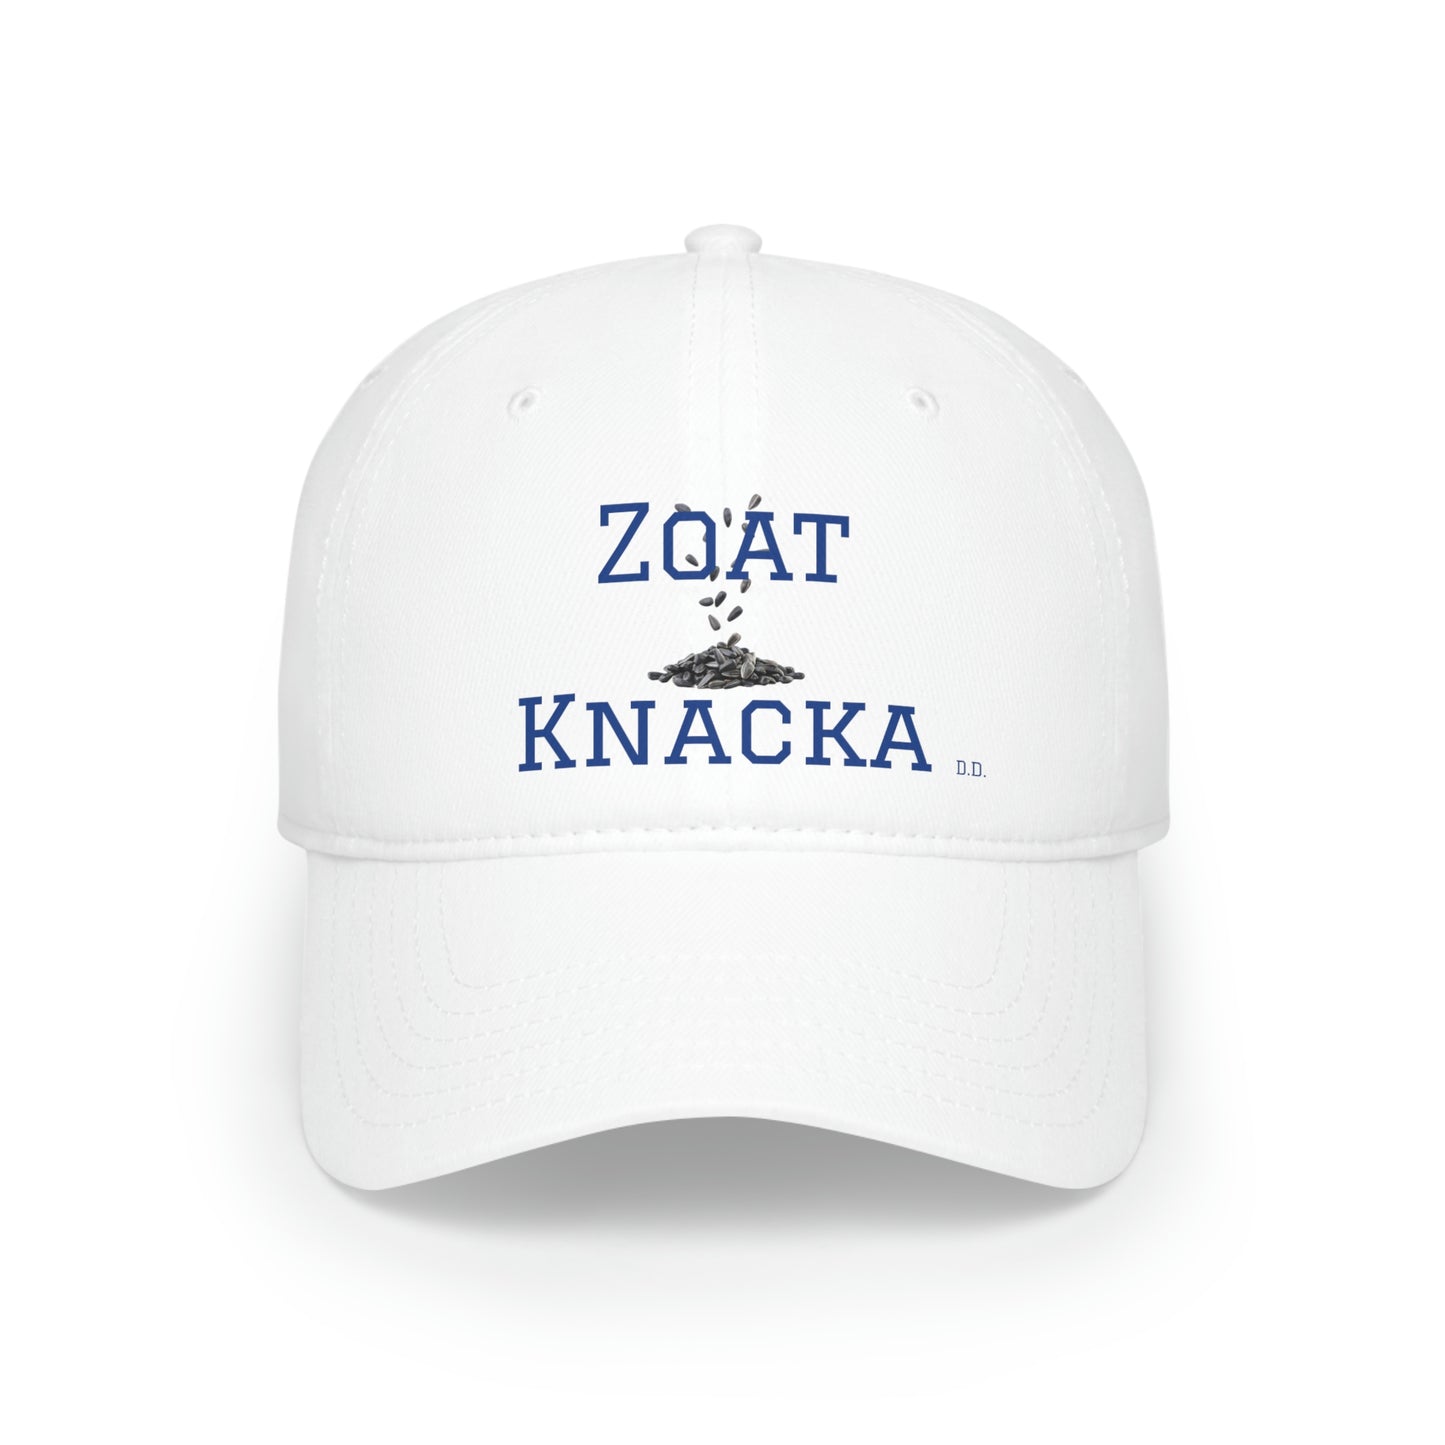 Zoat Knacka Low Profile Baseball Cap